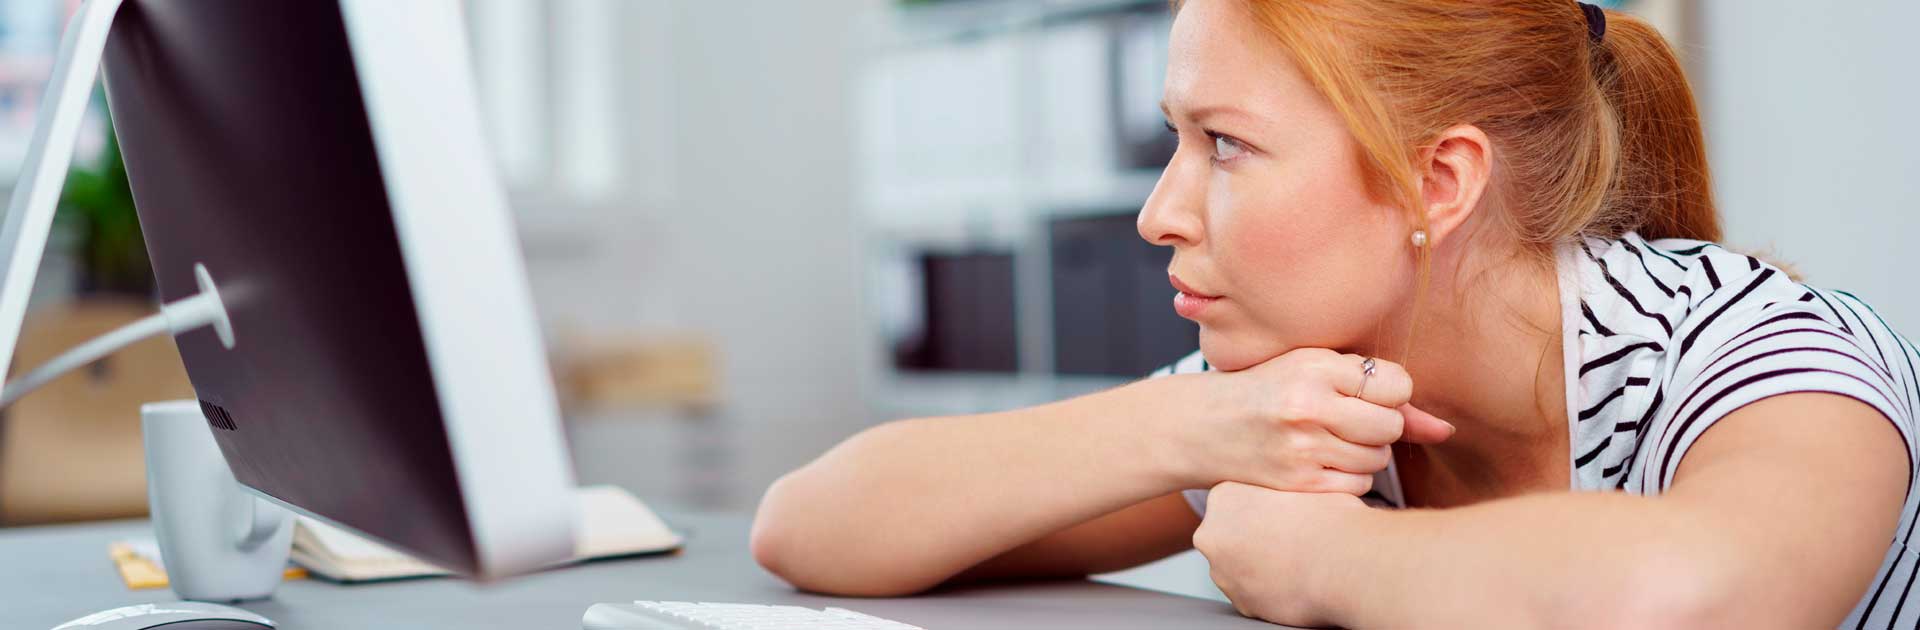 Eine junge Frau sitzt an einem Schreibtisch und blickt nachdenklich zur Seite. Das Kinn hat sie auf ihre Hände gestützt. Sie trägt ein schwarz-weiß gestreiftes T-Shirt und hat ihre roten Haare zu einem Zopf gebundenen. Auf dem Schreibtisch befinden sich eine Brille und eine Computertastatur.